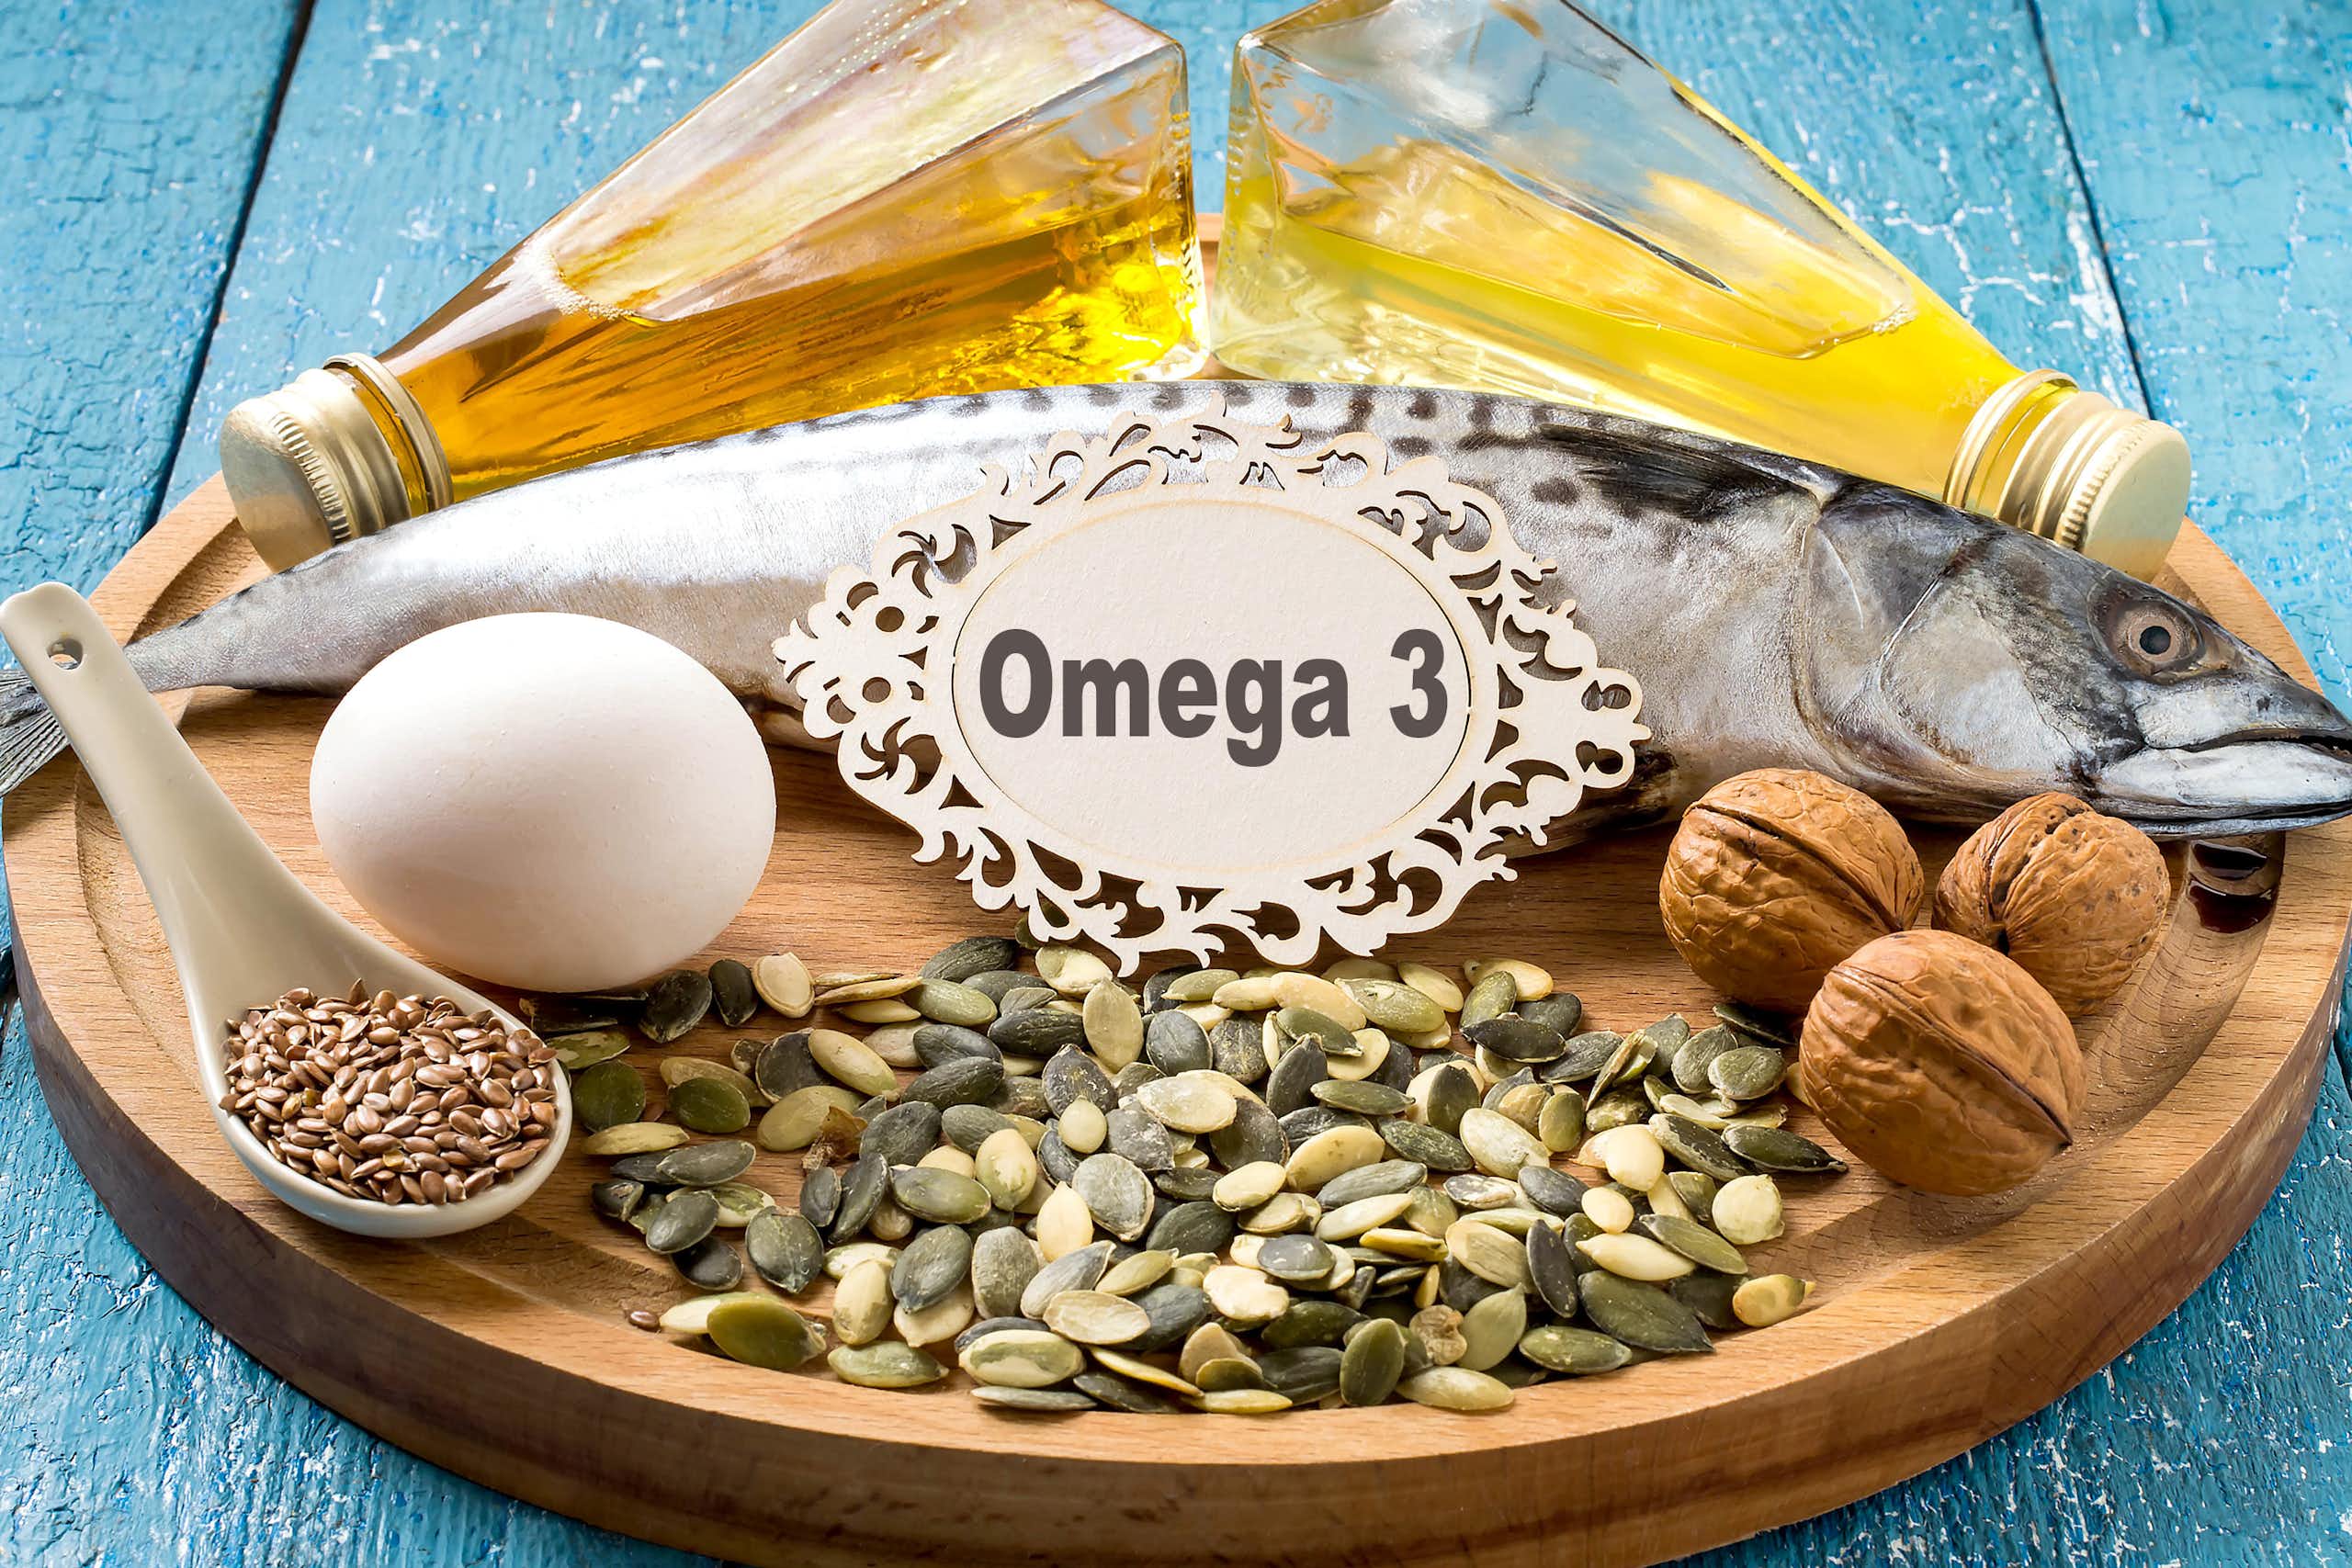 Sur un plateau, sont posé des flacons d'huile, un poisson cru, des noix, un oeuf et différentes graines. Au centre, une étiquette indique « Omega 3 »